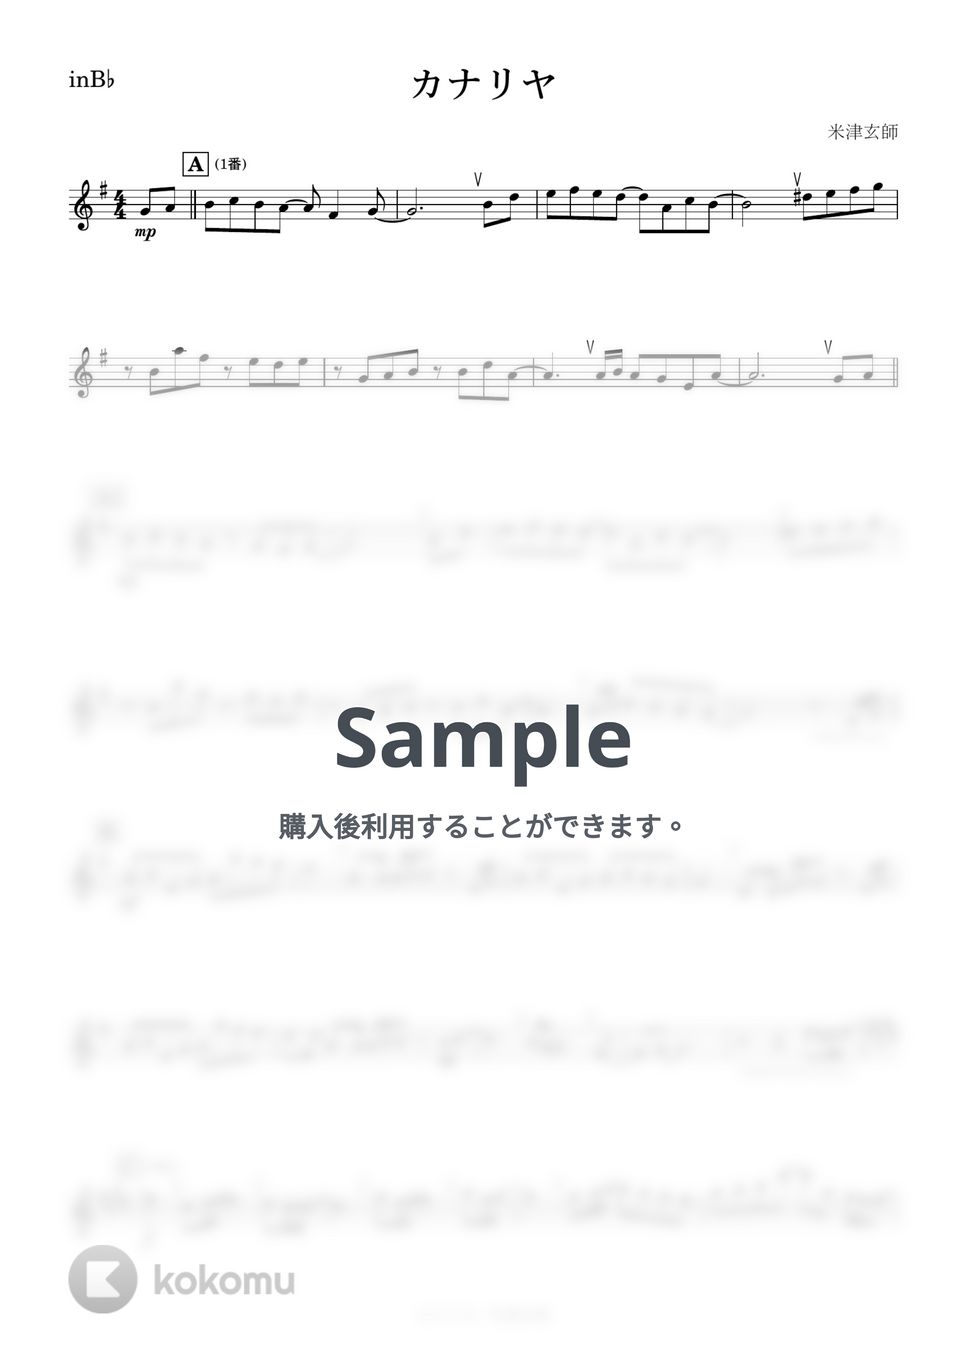 米津玄師 - カナリヤ (B♭) by kanamusic